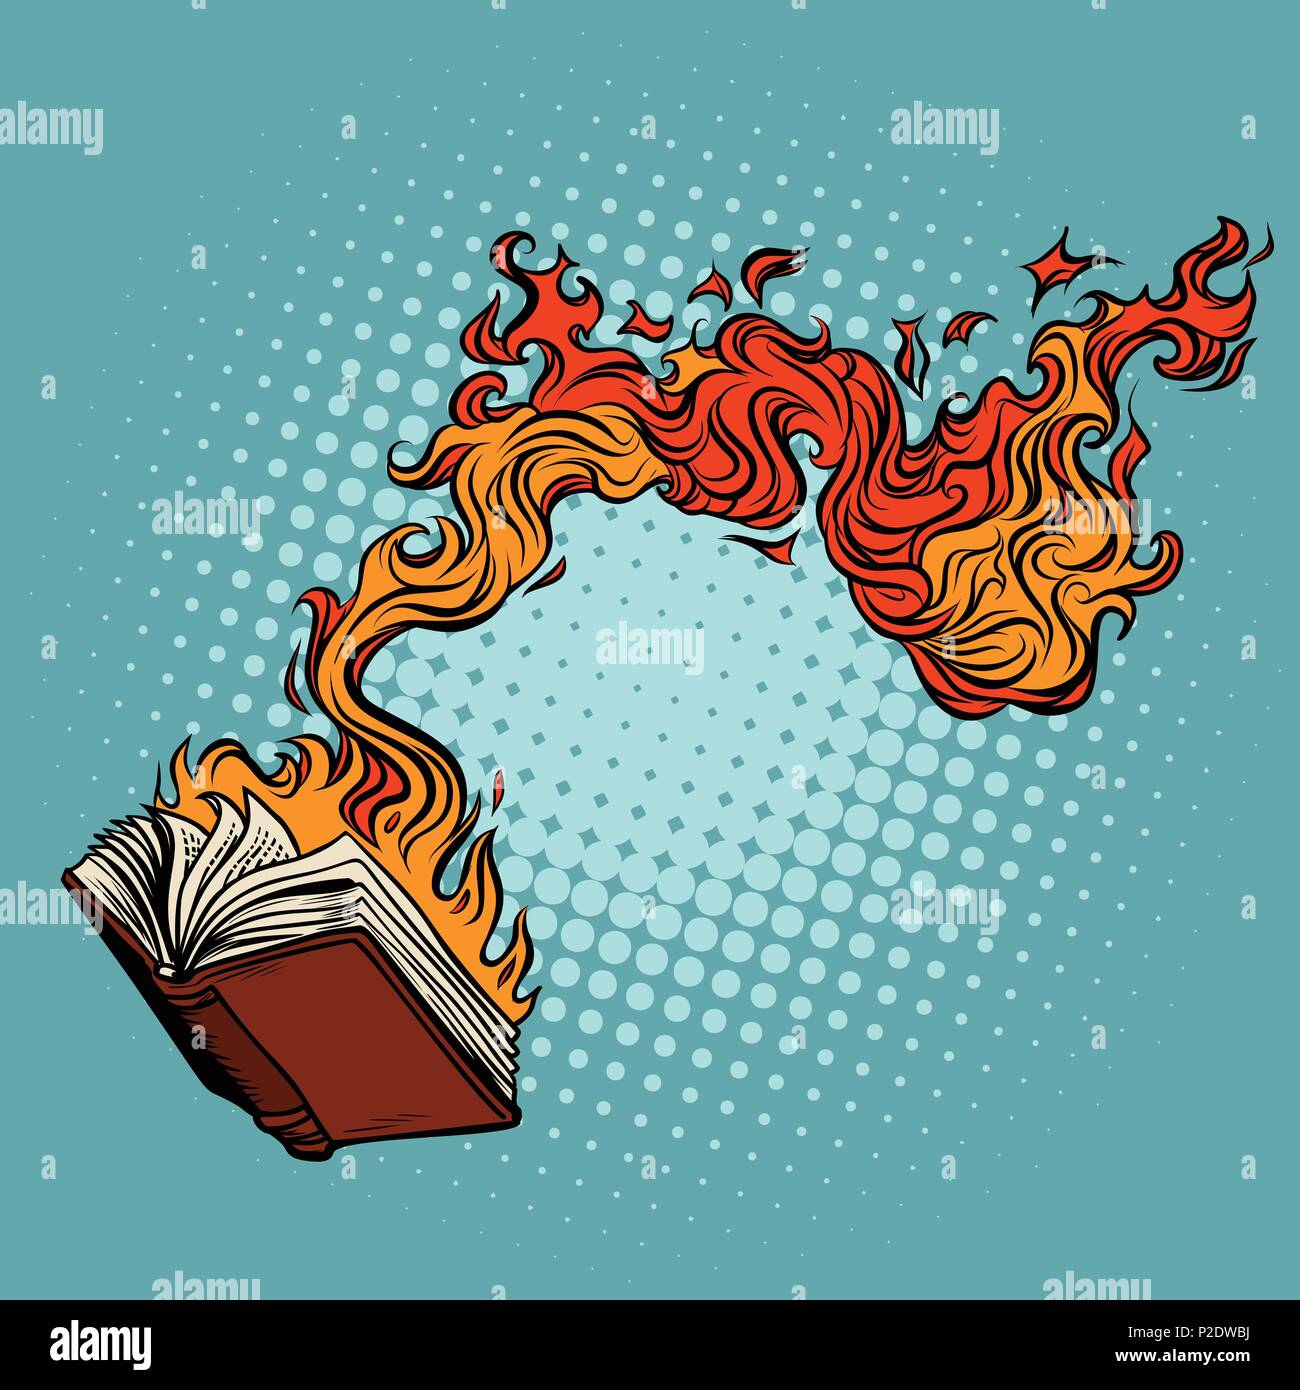 Das Buch brennt. Zerstörung von Wissen und Kultur. Comic cartoon Pop Art retro Vektor illustration Zeichnung Stock Vektor